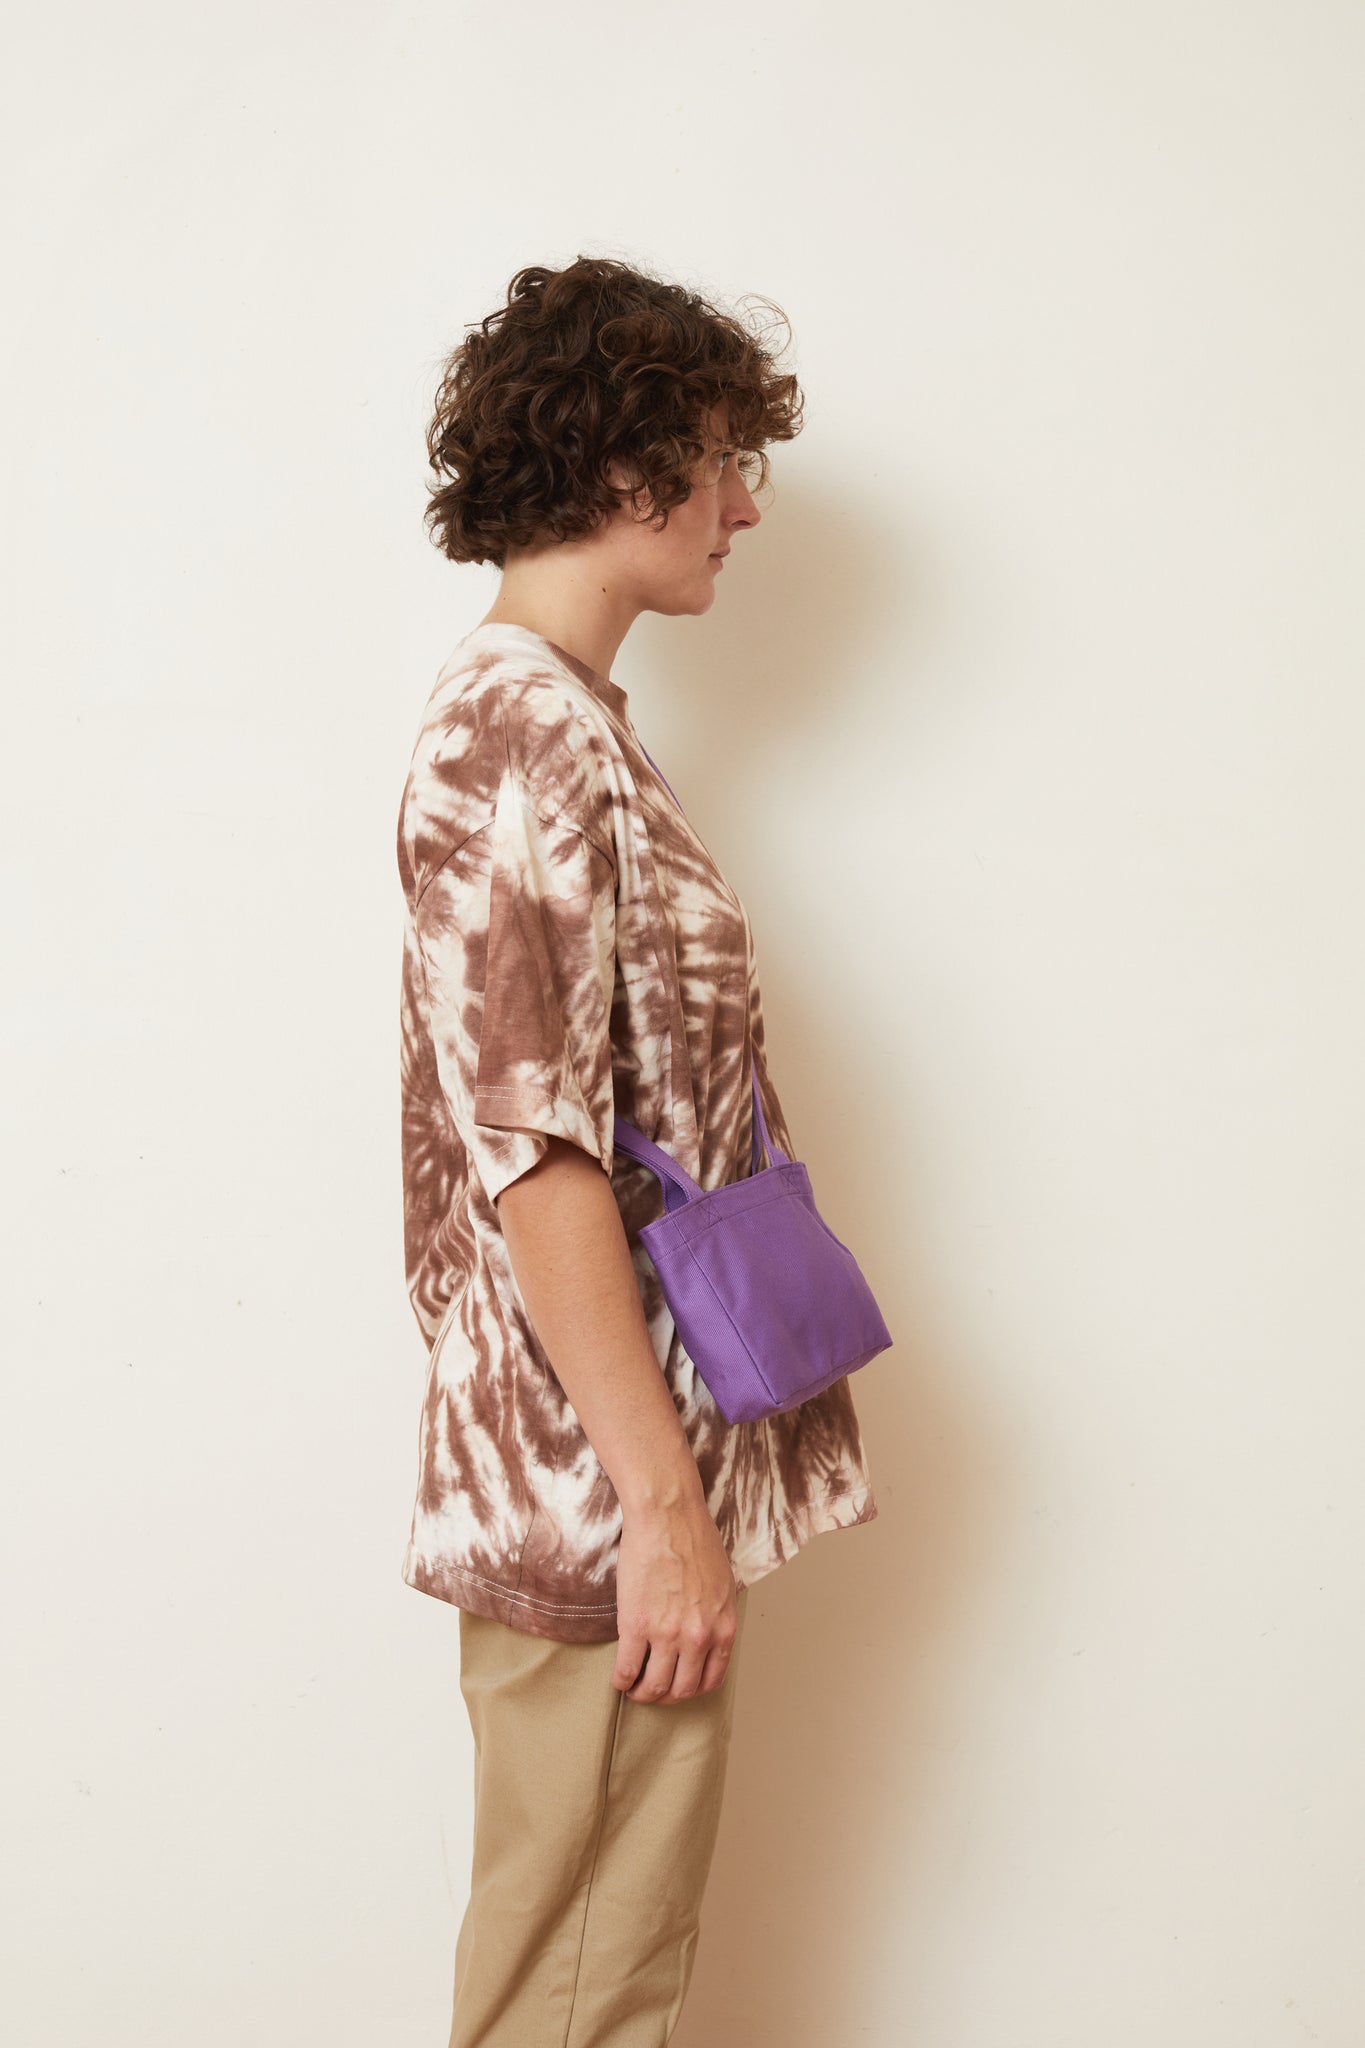 Plain Purple Mini Tote Bag